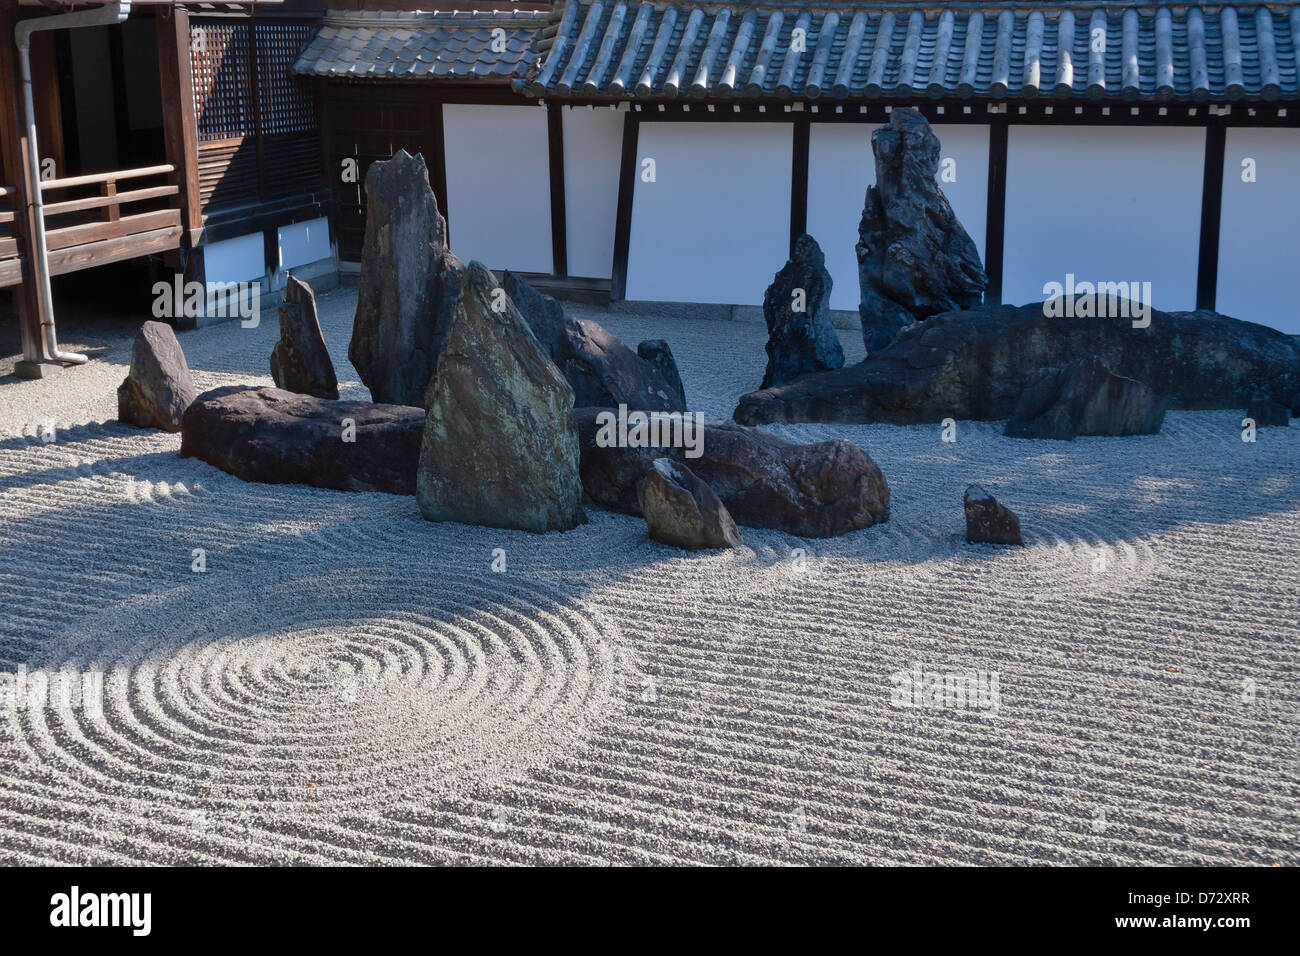 Zen garden in Tofuku-ji temple, Kyoto, Japan Stock Photo